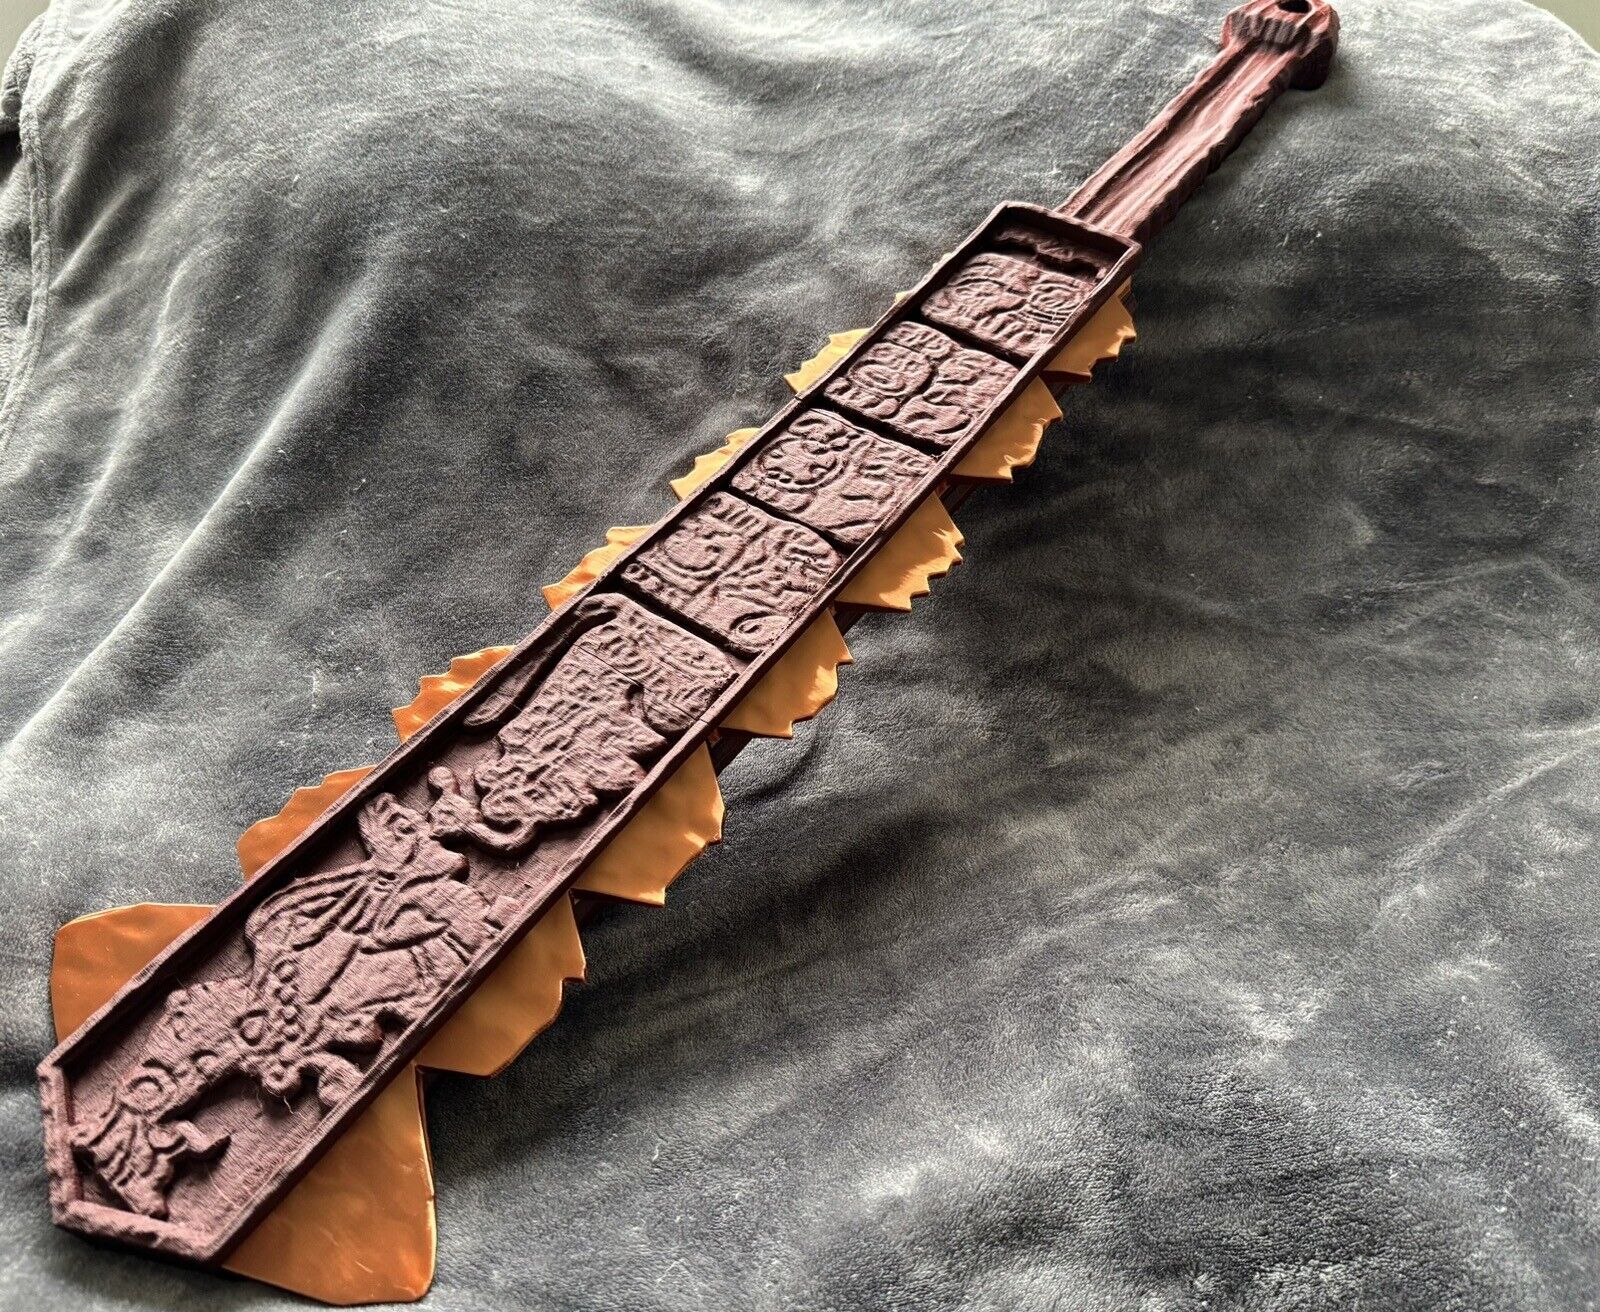 Aztec Sword, Mayan War Club, Macuahuitl, Obsidian Sword